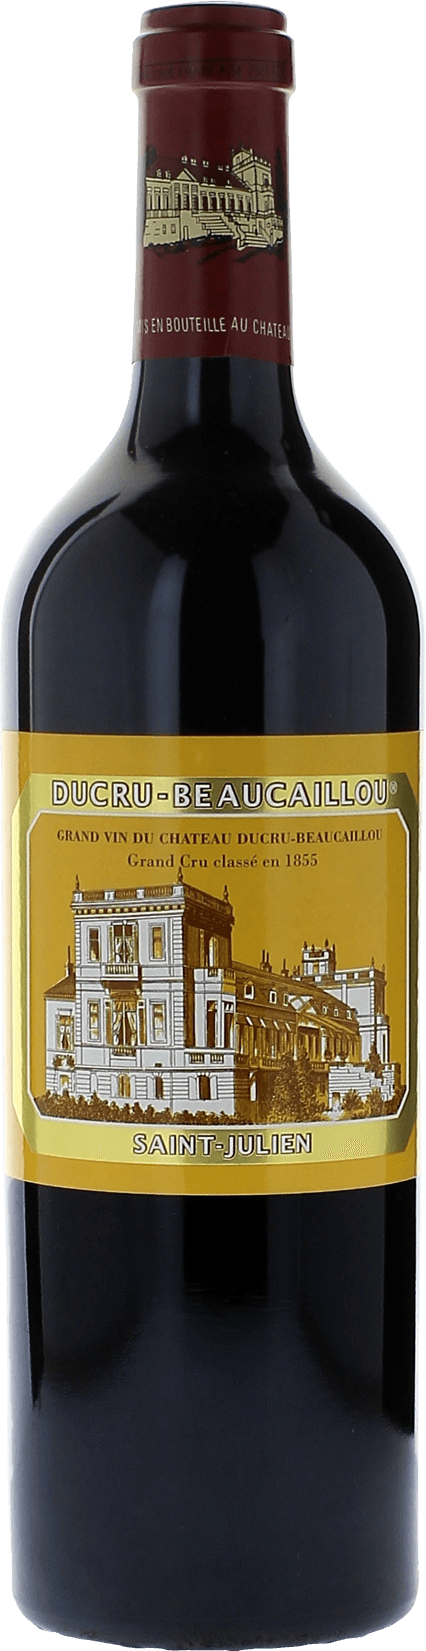 Ducru beaucaillou 1994 2me Grand cru class Saint-Julien, Bordeaux rouge